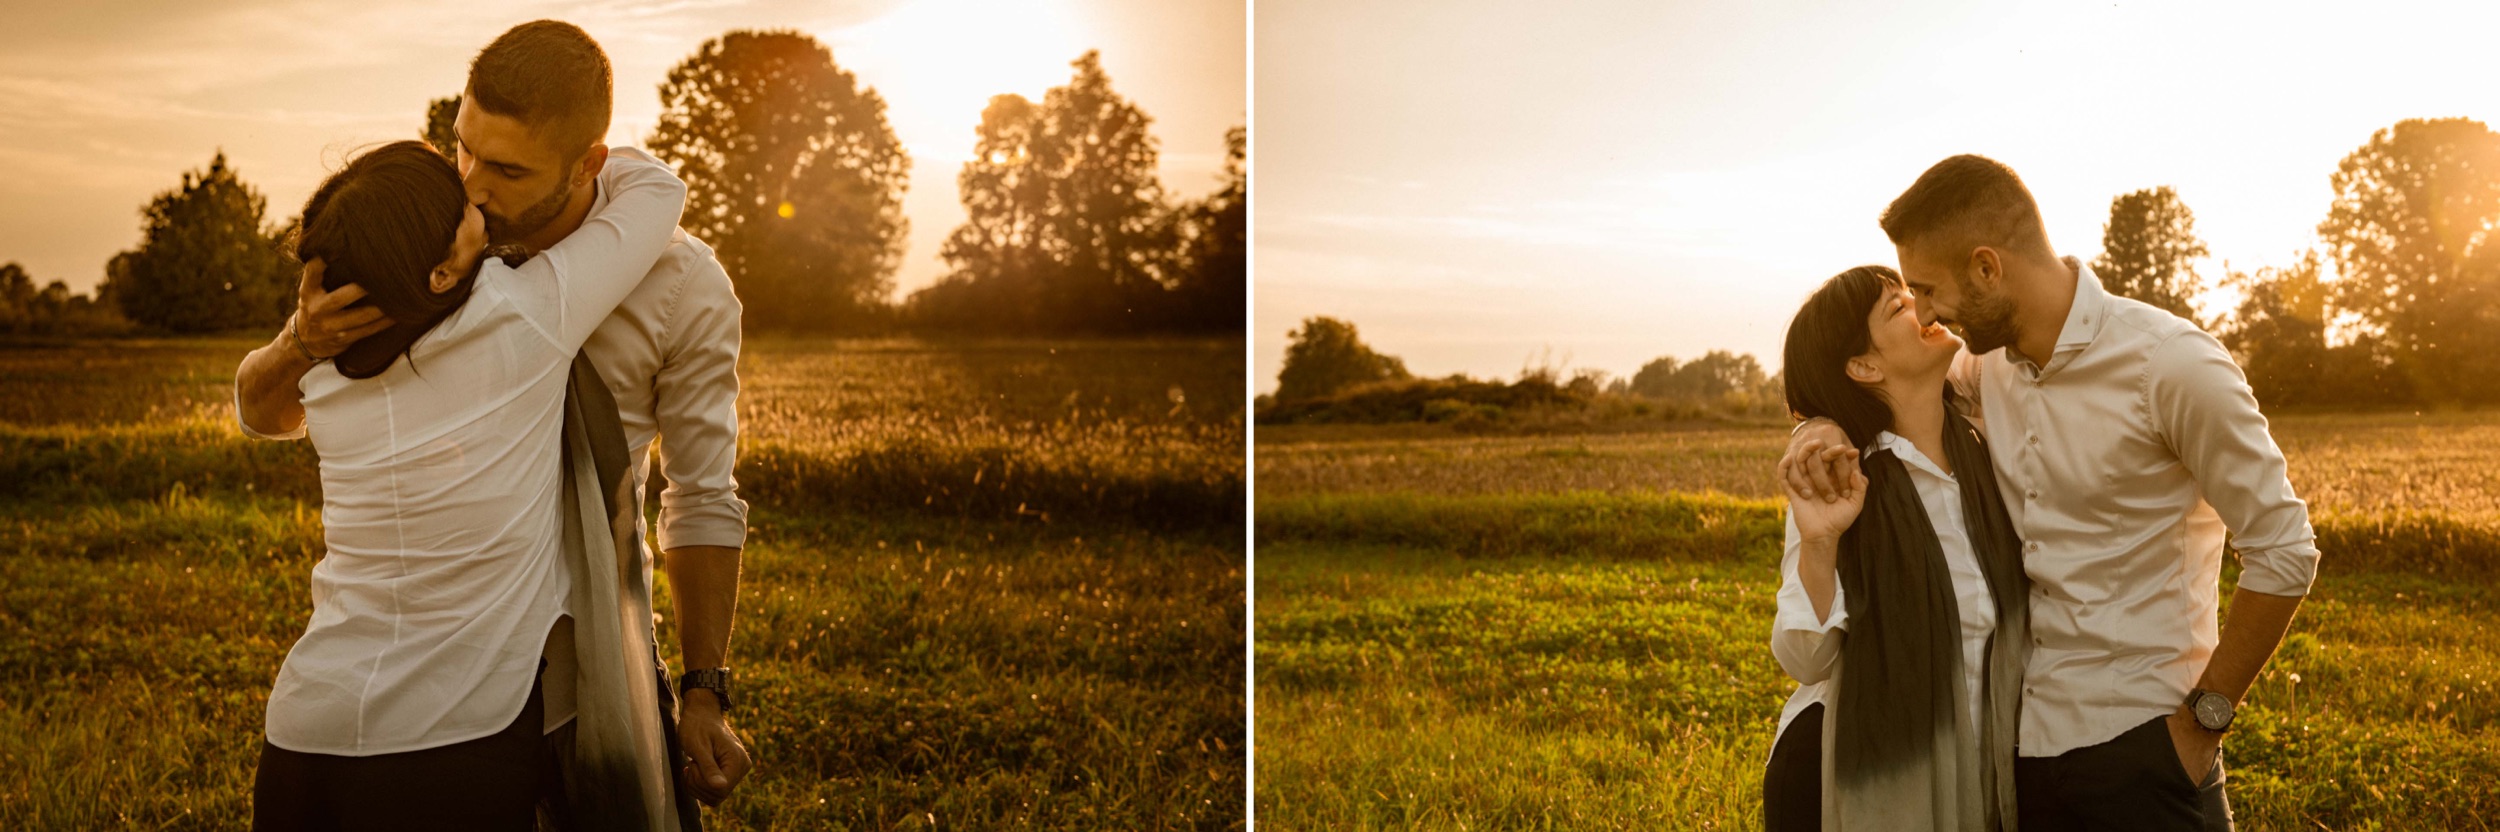 sessione di ritratto al tramonto, candid photography, family session, countryside, campagna, Milano